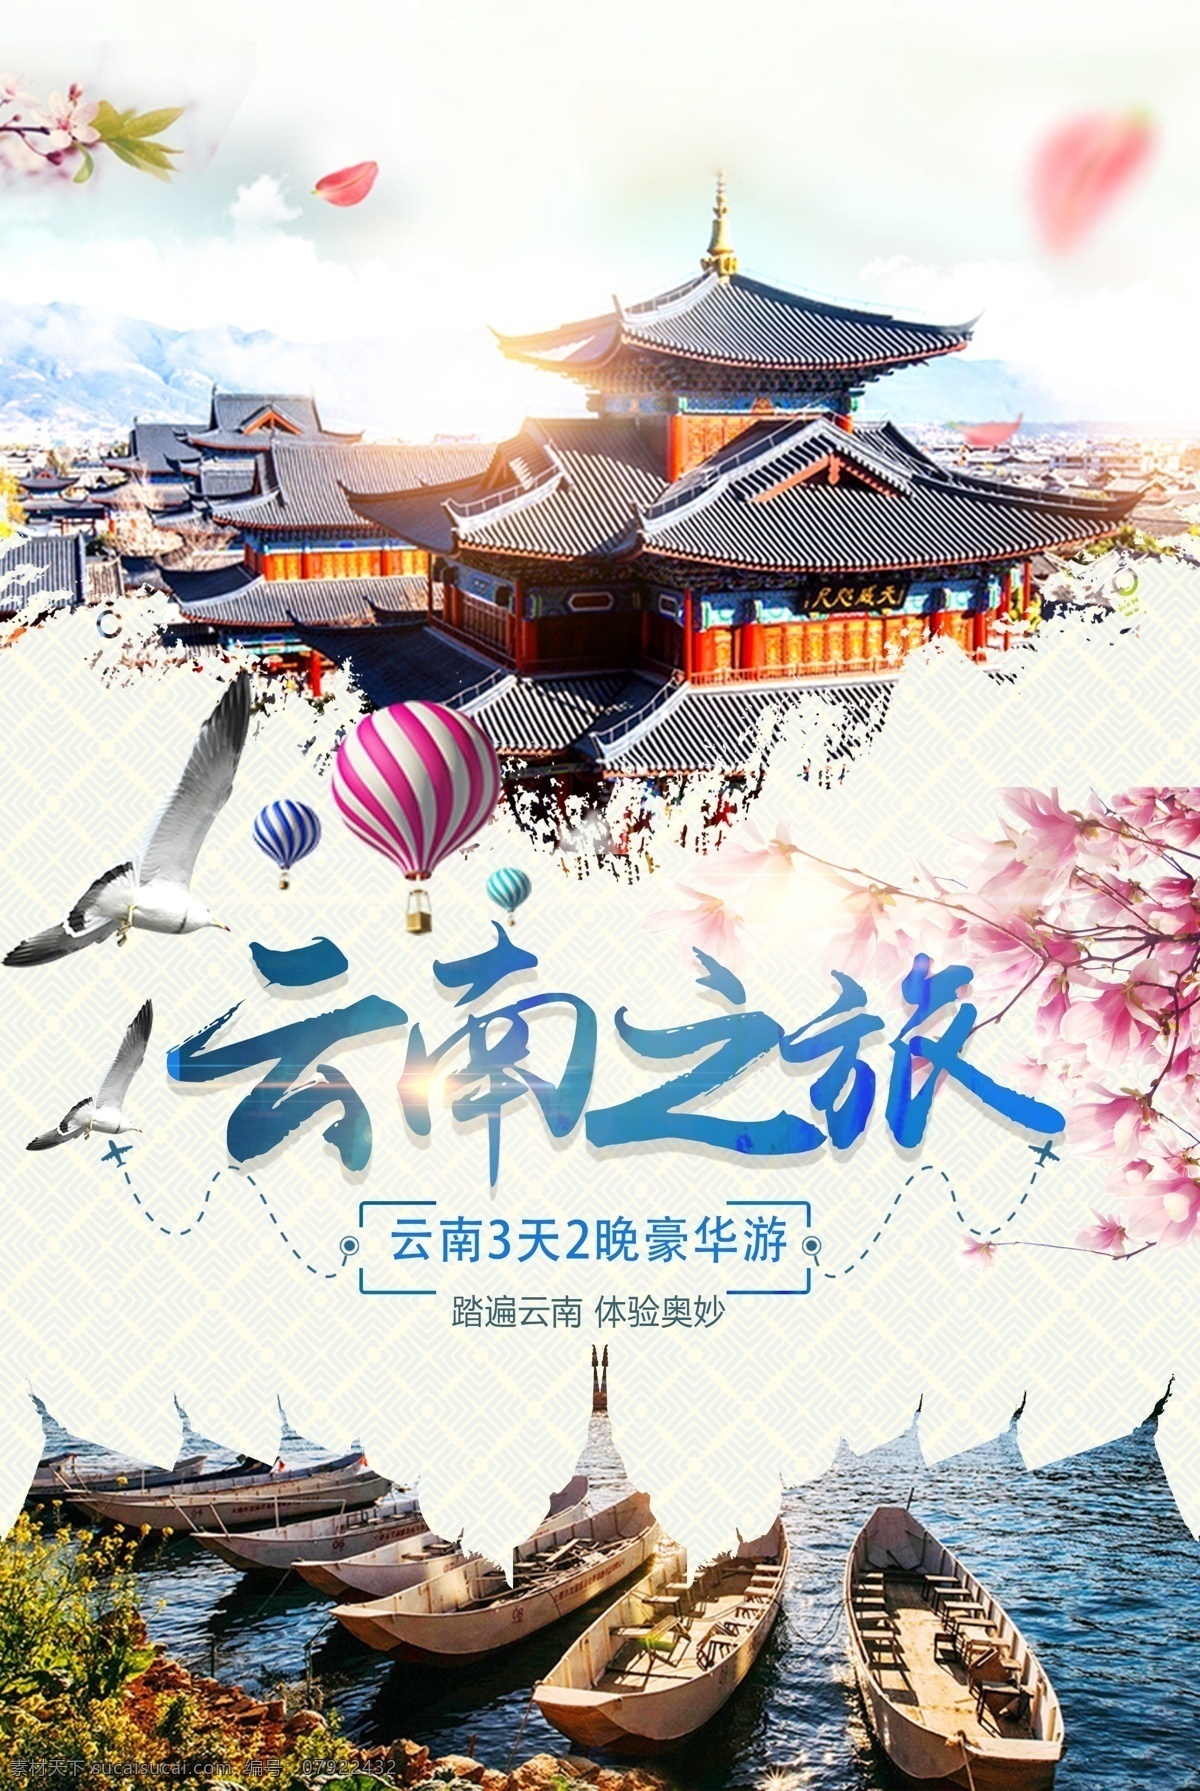 云南 之旅 旅游景点 景区 风景 活动 旅游 景点 海报